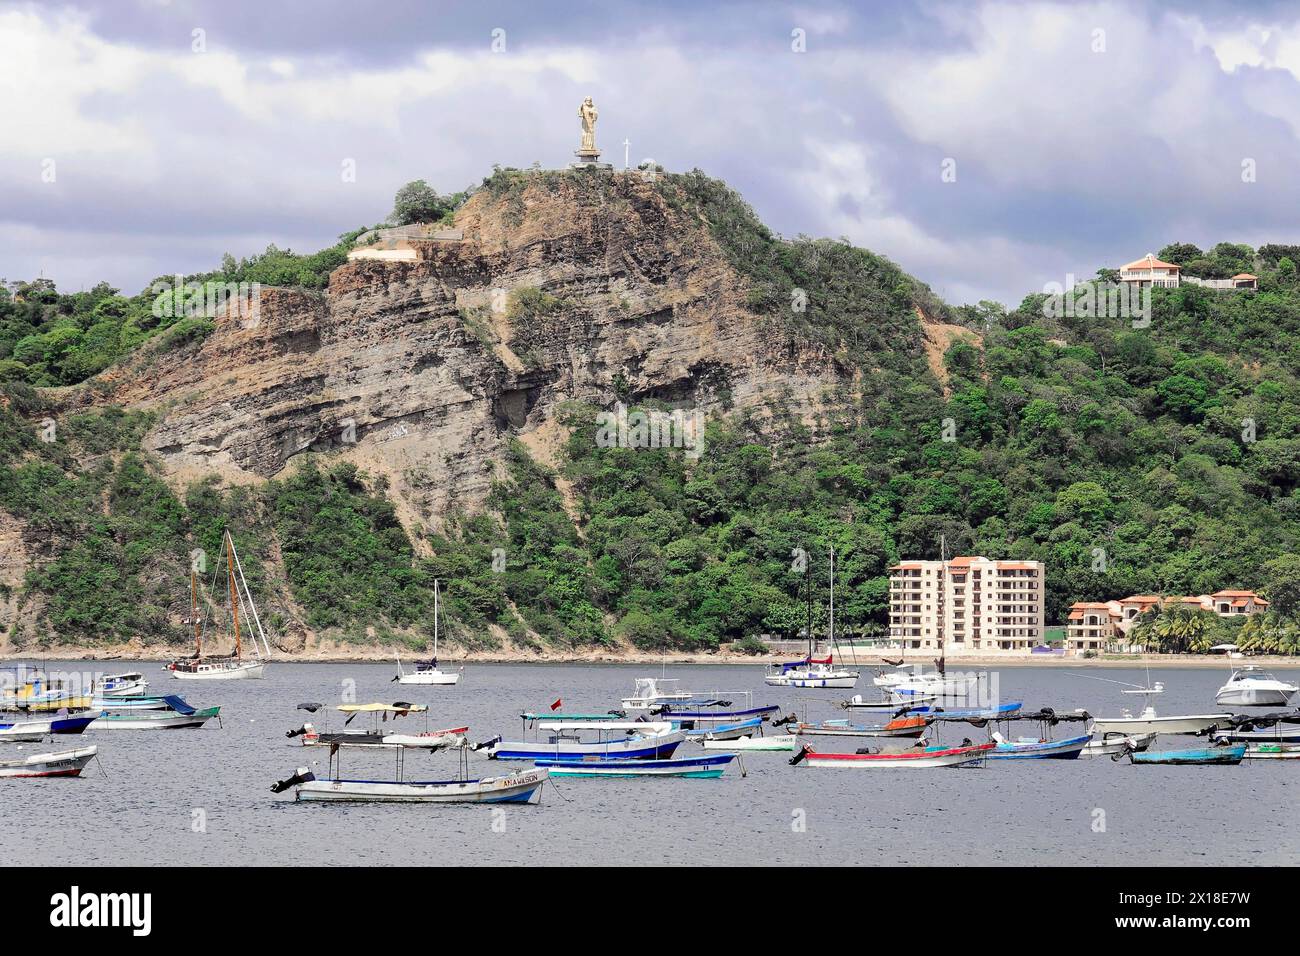 San Juan del sur, Nicaragua, Une statue de Jésus est intronisée sur une colline boisée au-dessus d'une baie avec des bateaux, Amérique centrale, Amérique centrale Banque D'Images